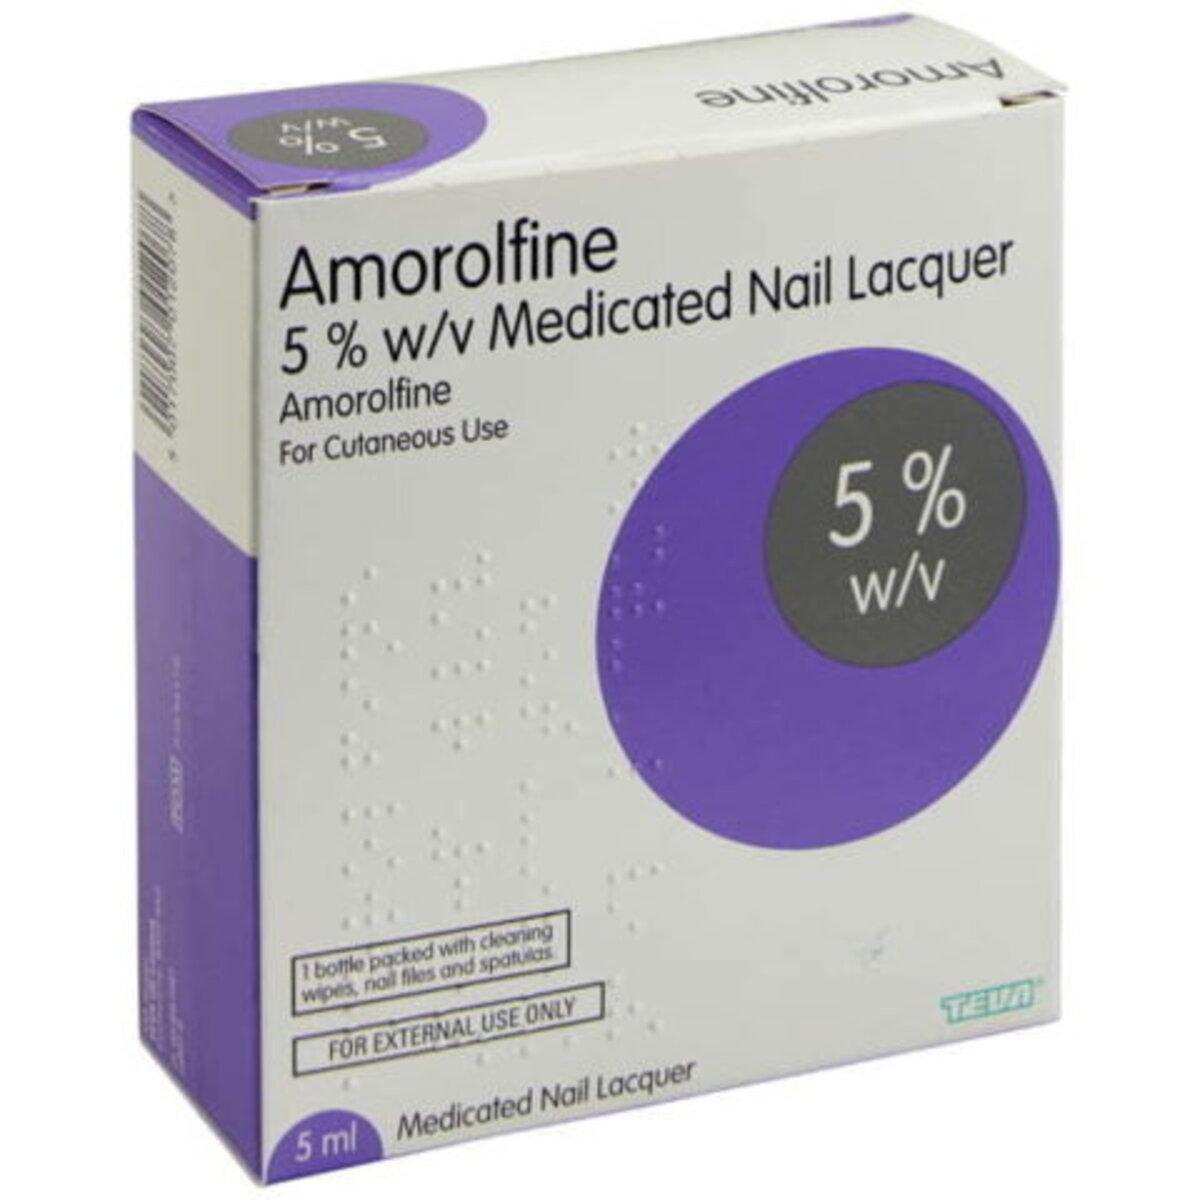 Curanail Medicated Nail Lacquer 5%